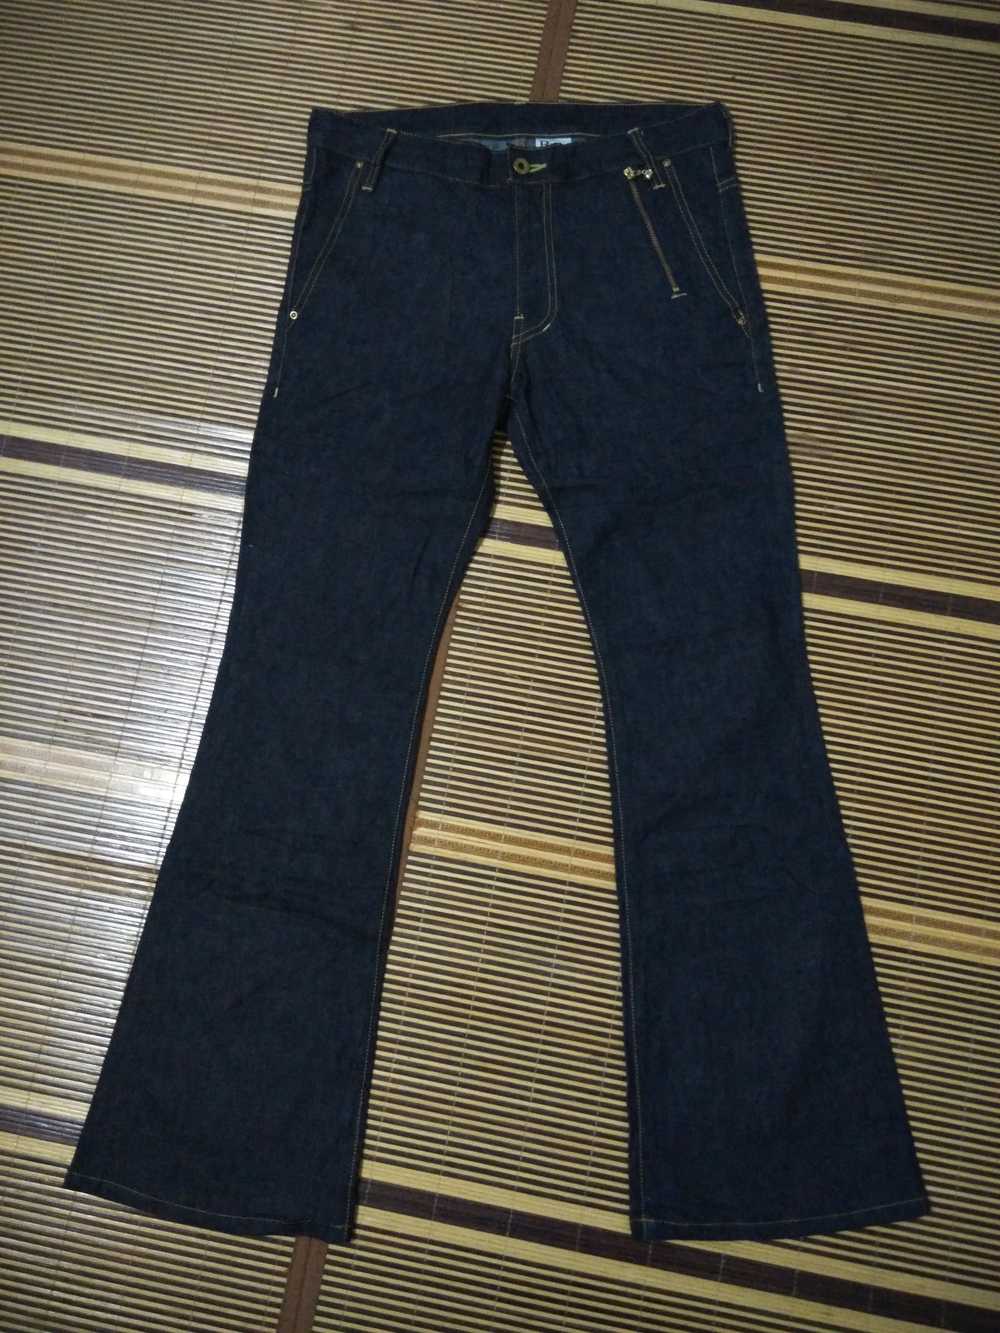 women pants jeans clothing - Gem